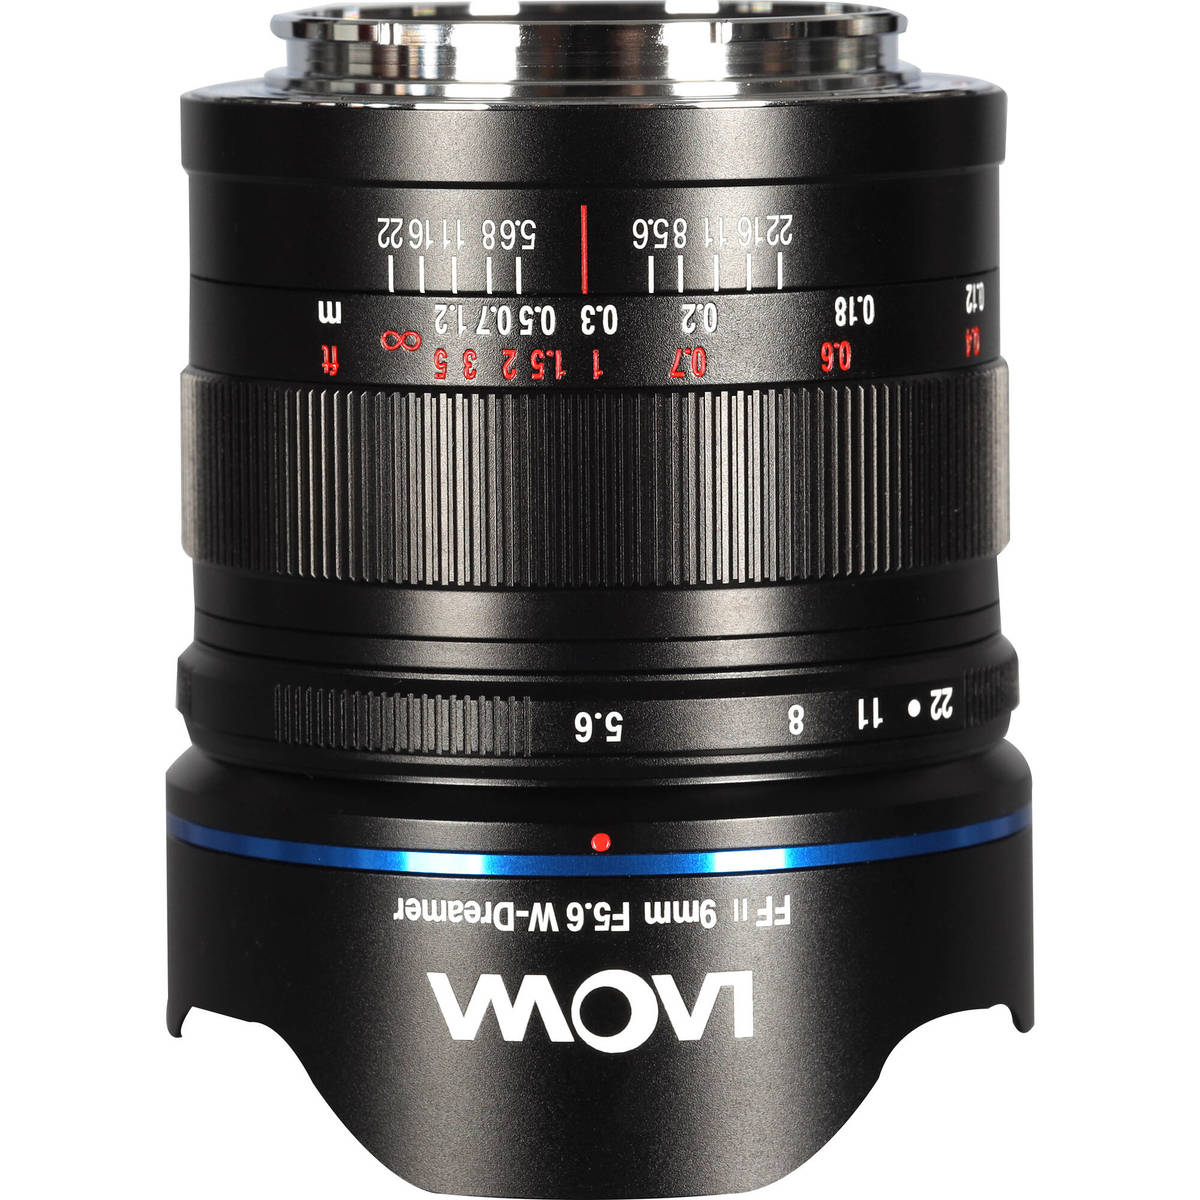 1. Laowa Lens 9mm f/5.6 W-Dreamer FF RL (Sony FE)